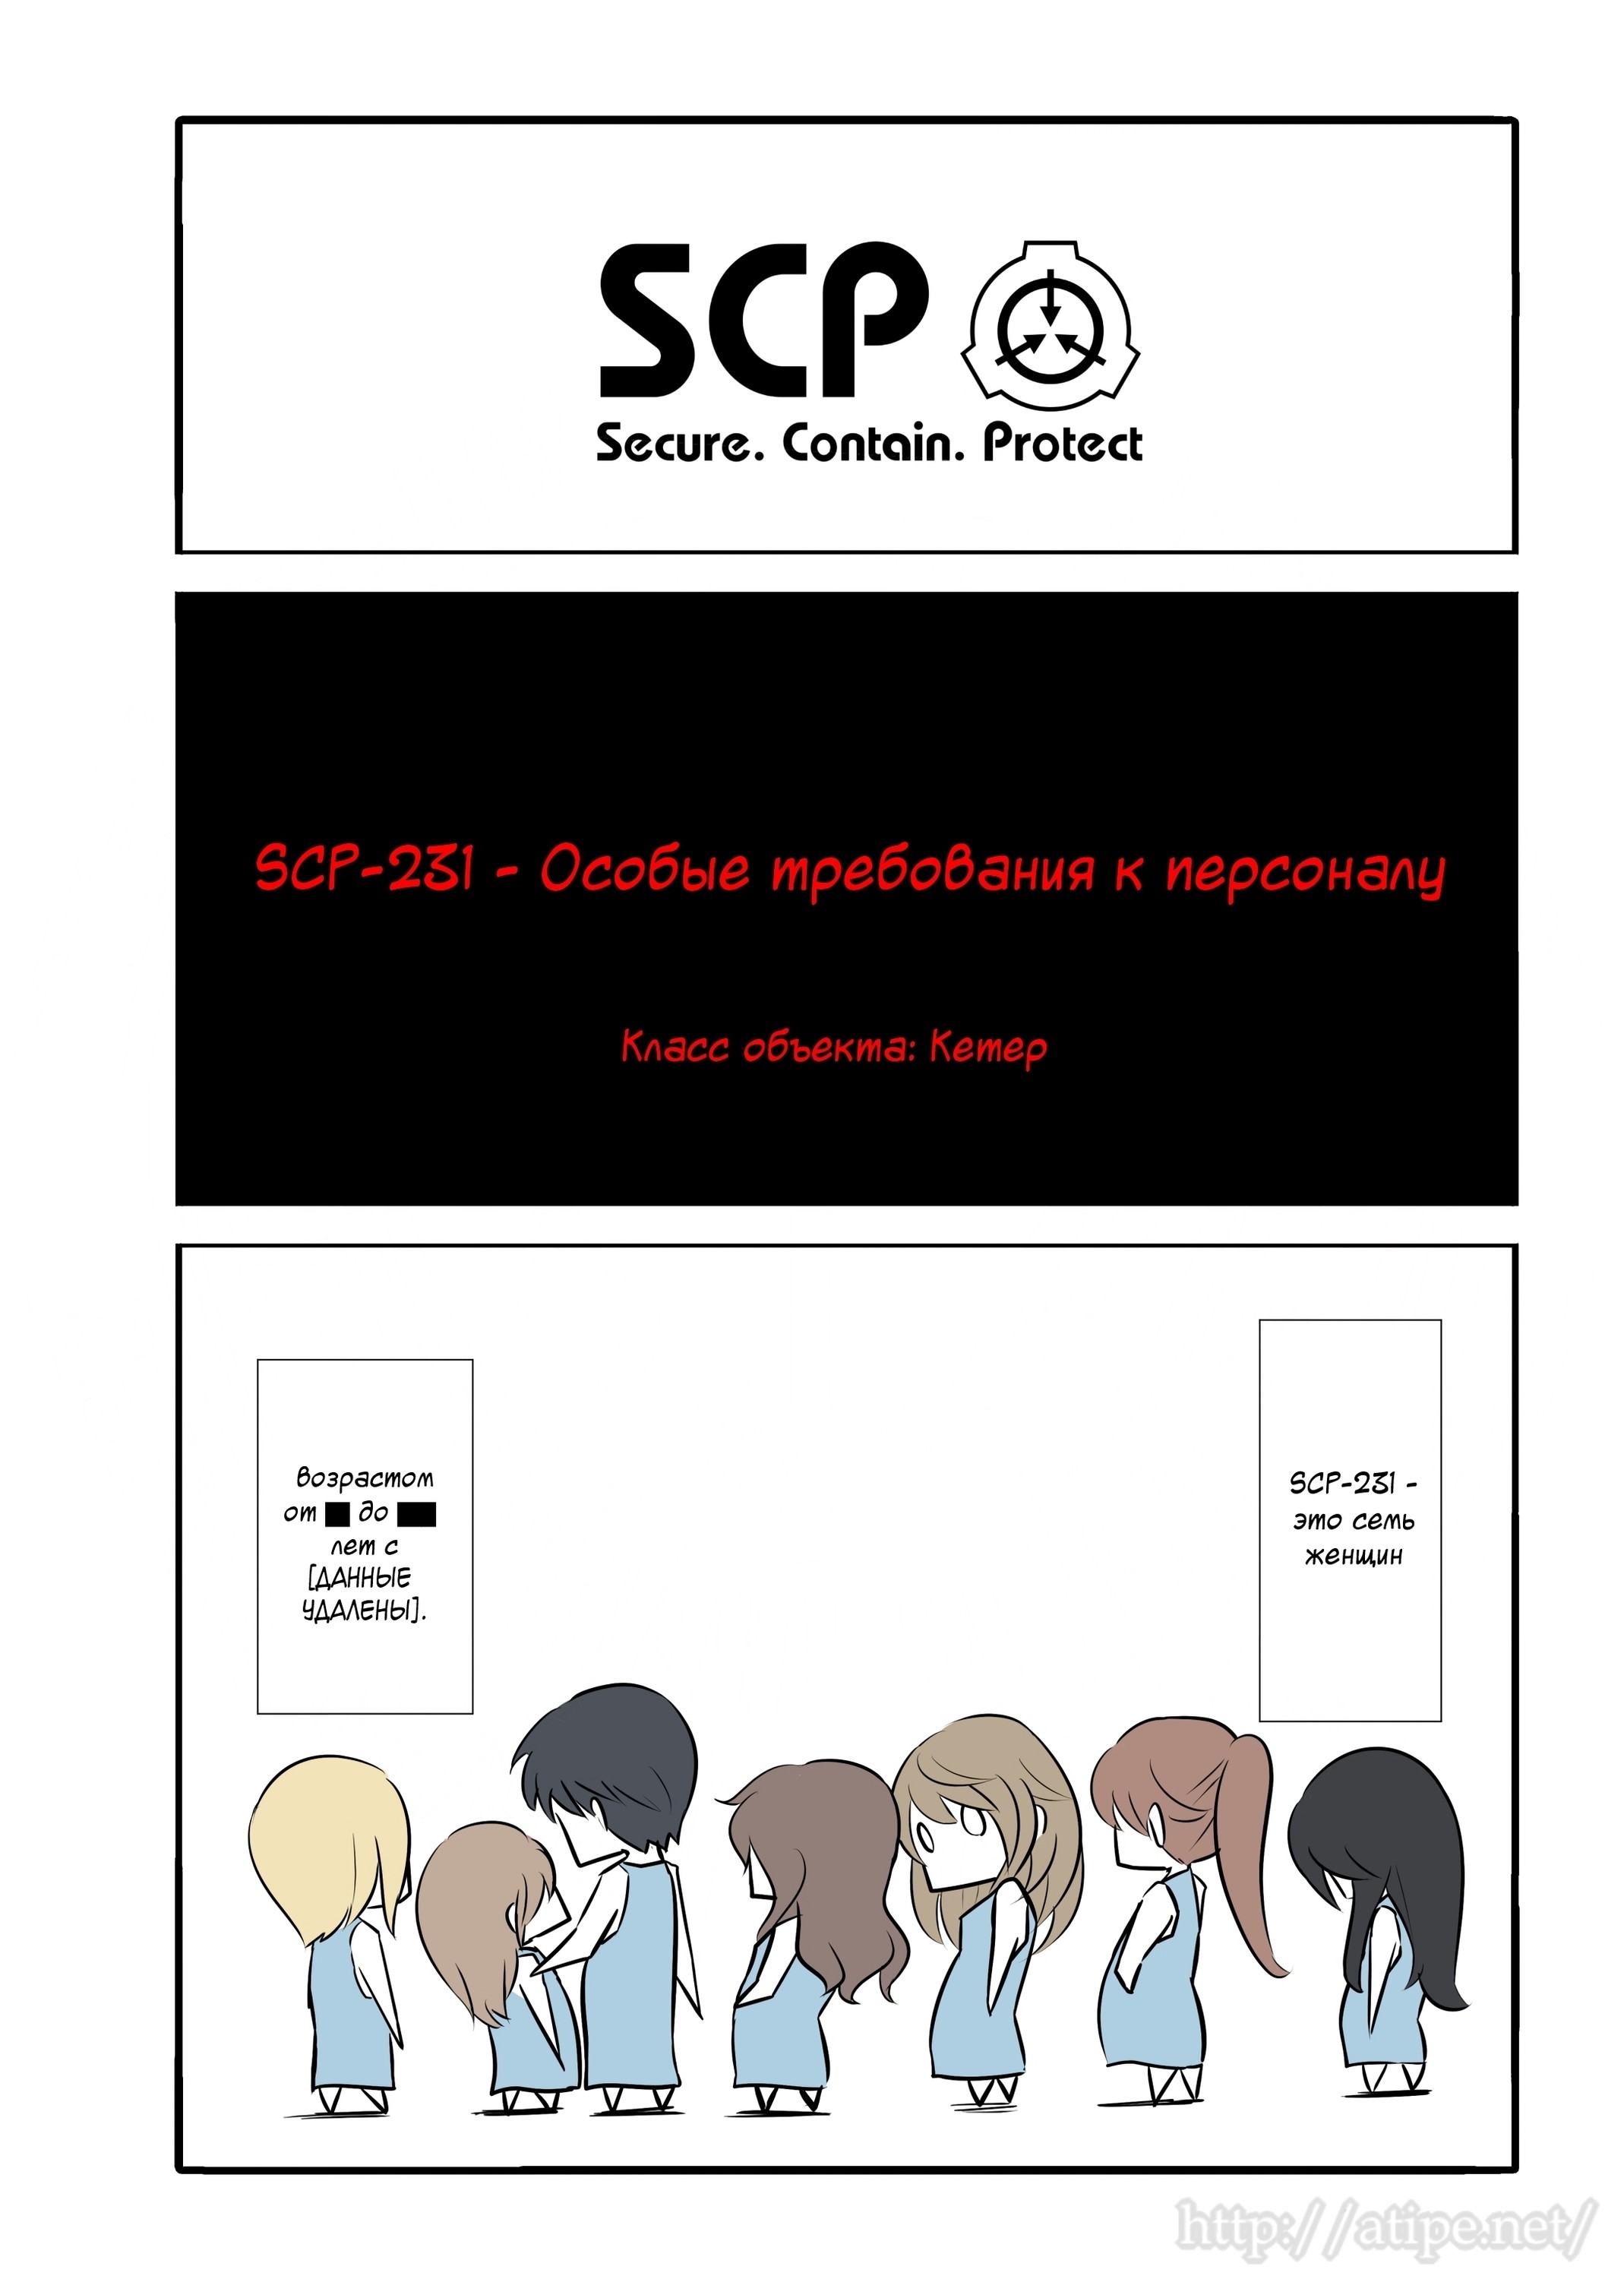 Упрощенный SCP 1 - 49 SCP-231